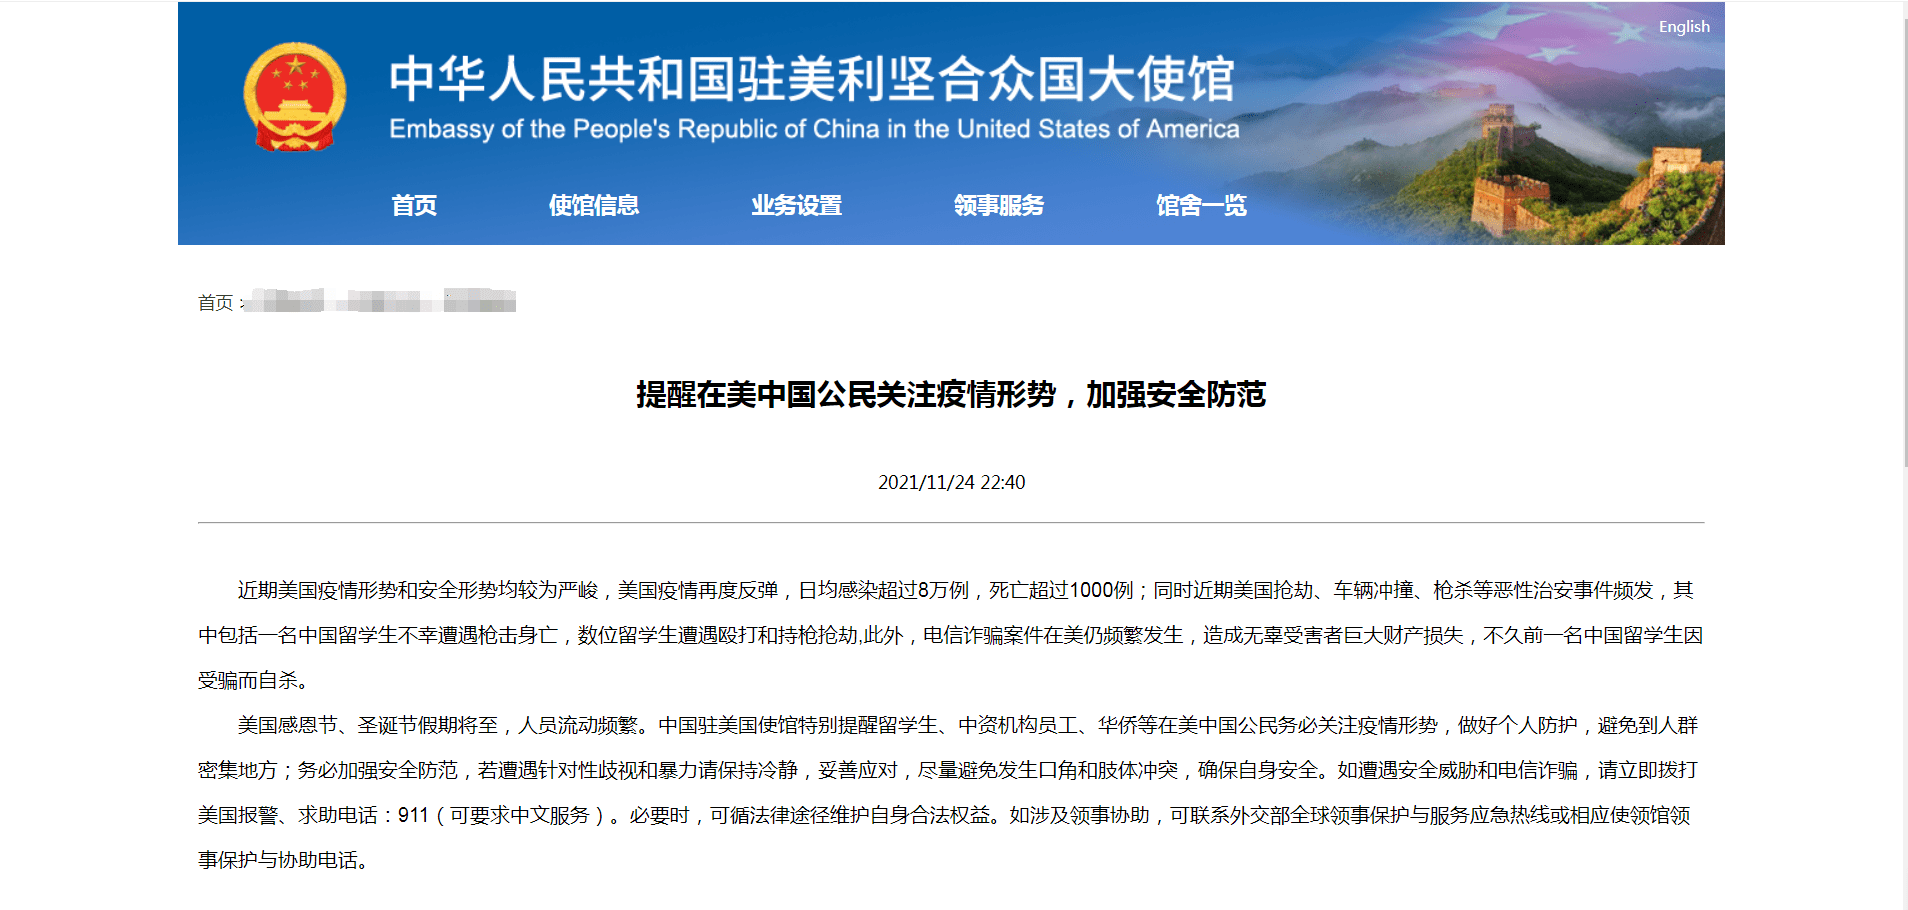 中國駐美使館緊急提醒 在美公民謹防三大陷阱 | 星島日報